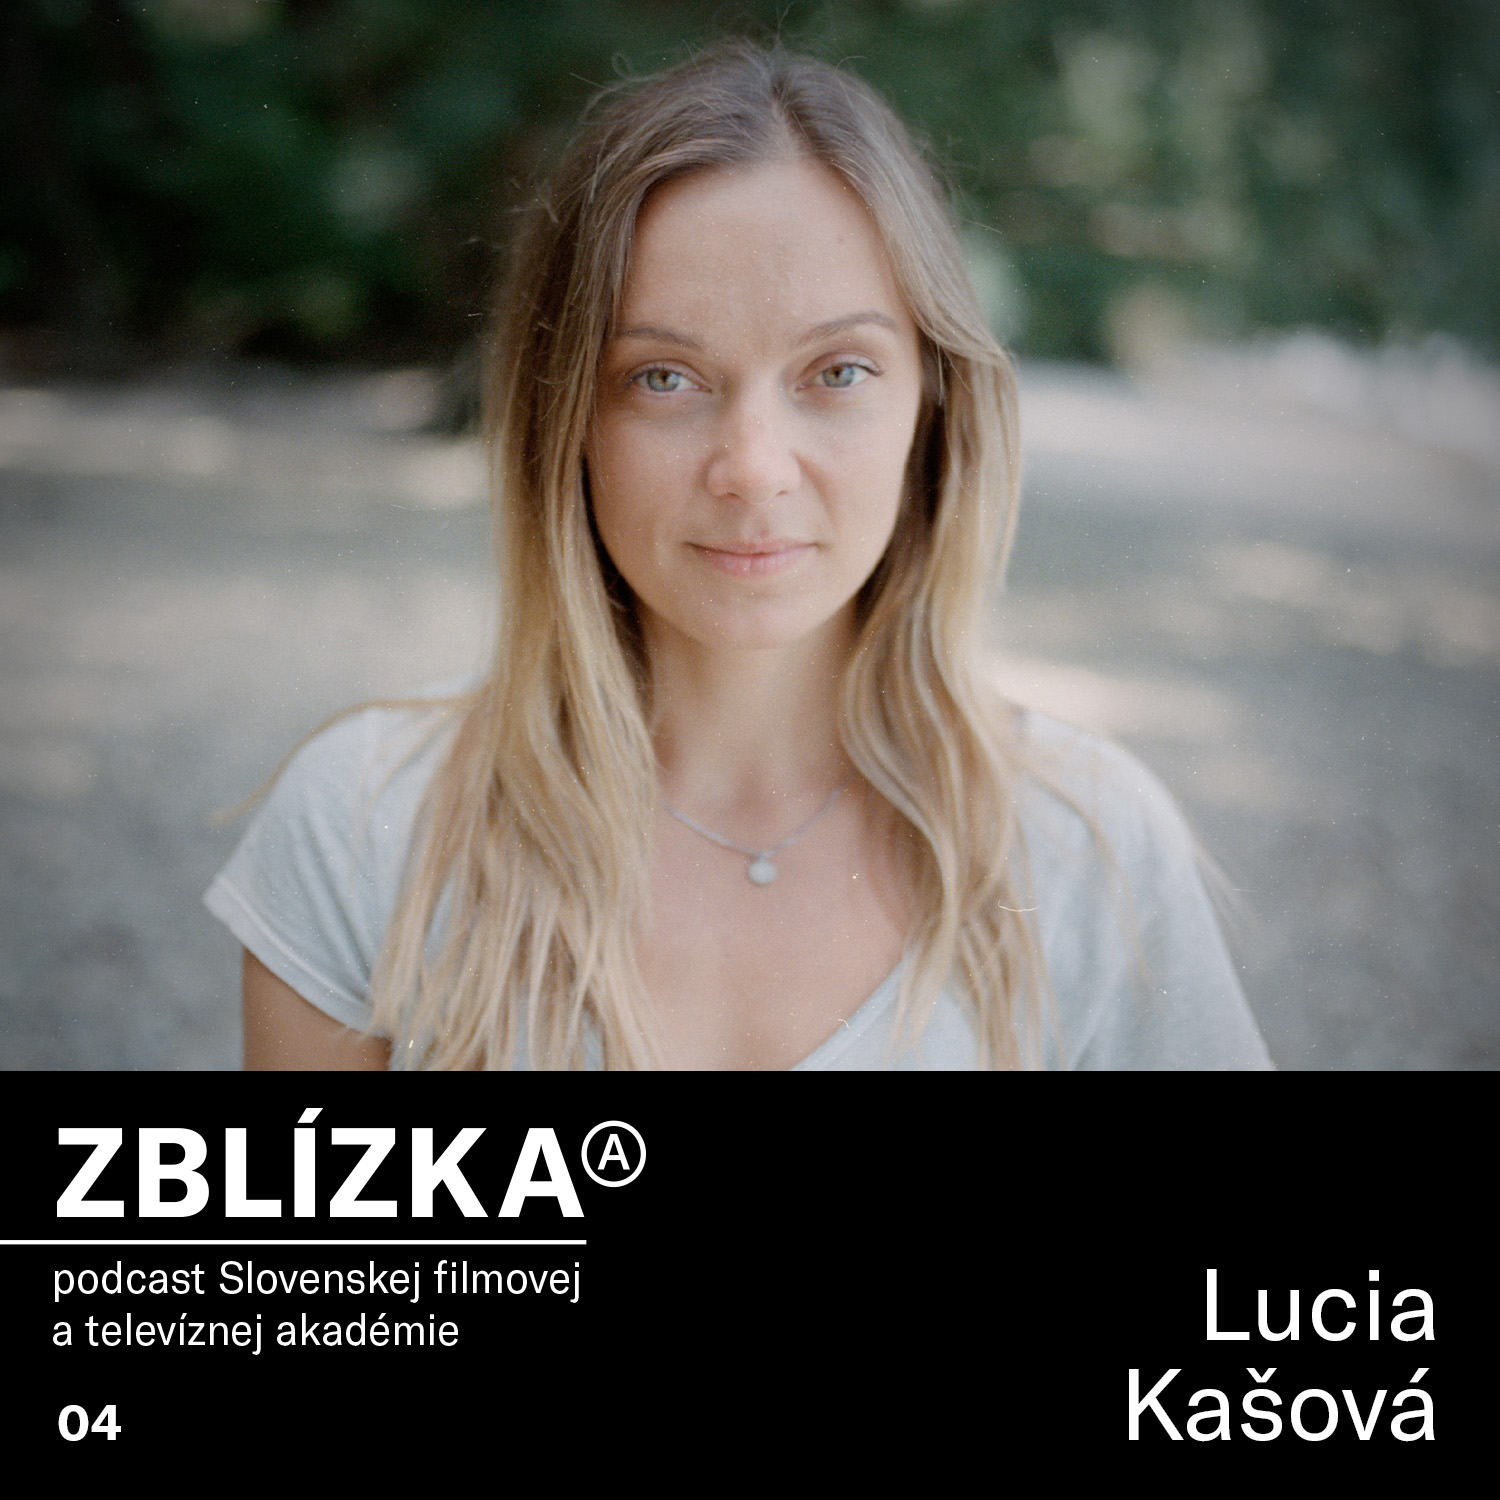 Lucia Kašová: Práca dokumentaristky ma naučila pozerať sa na veci inými očami